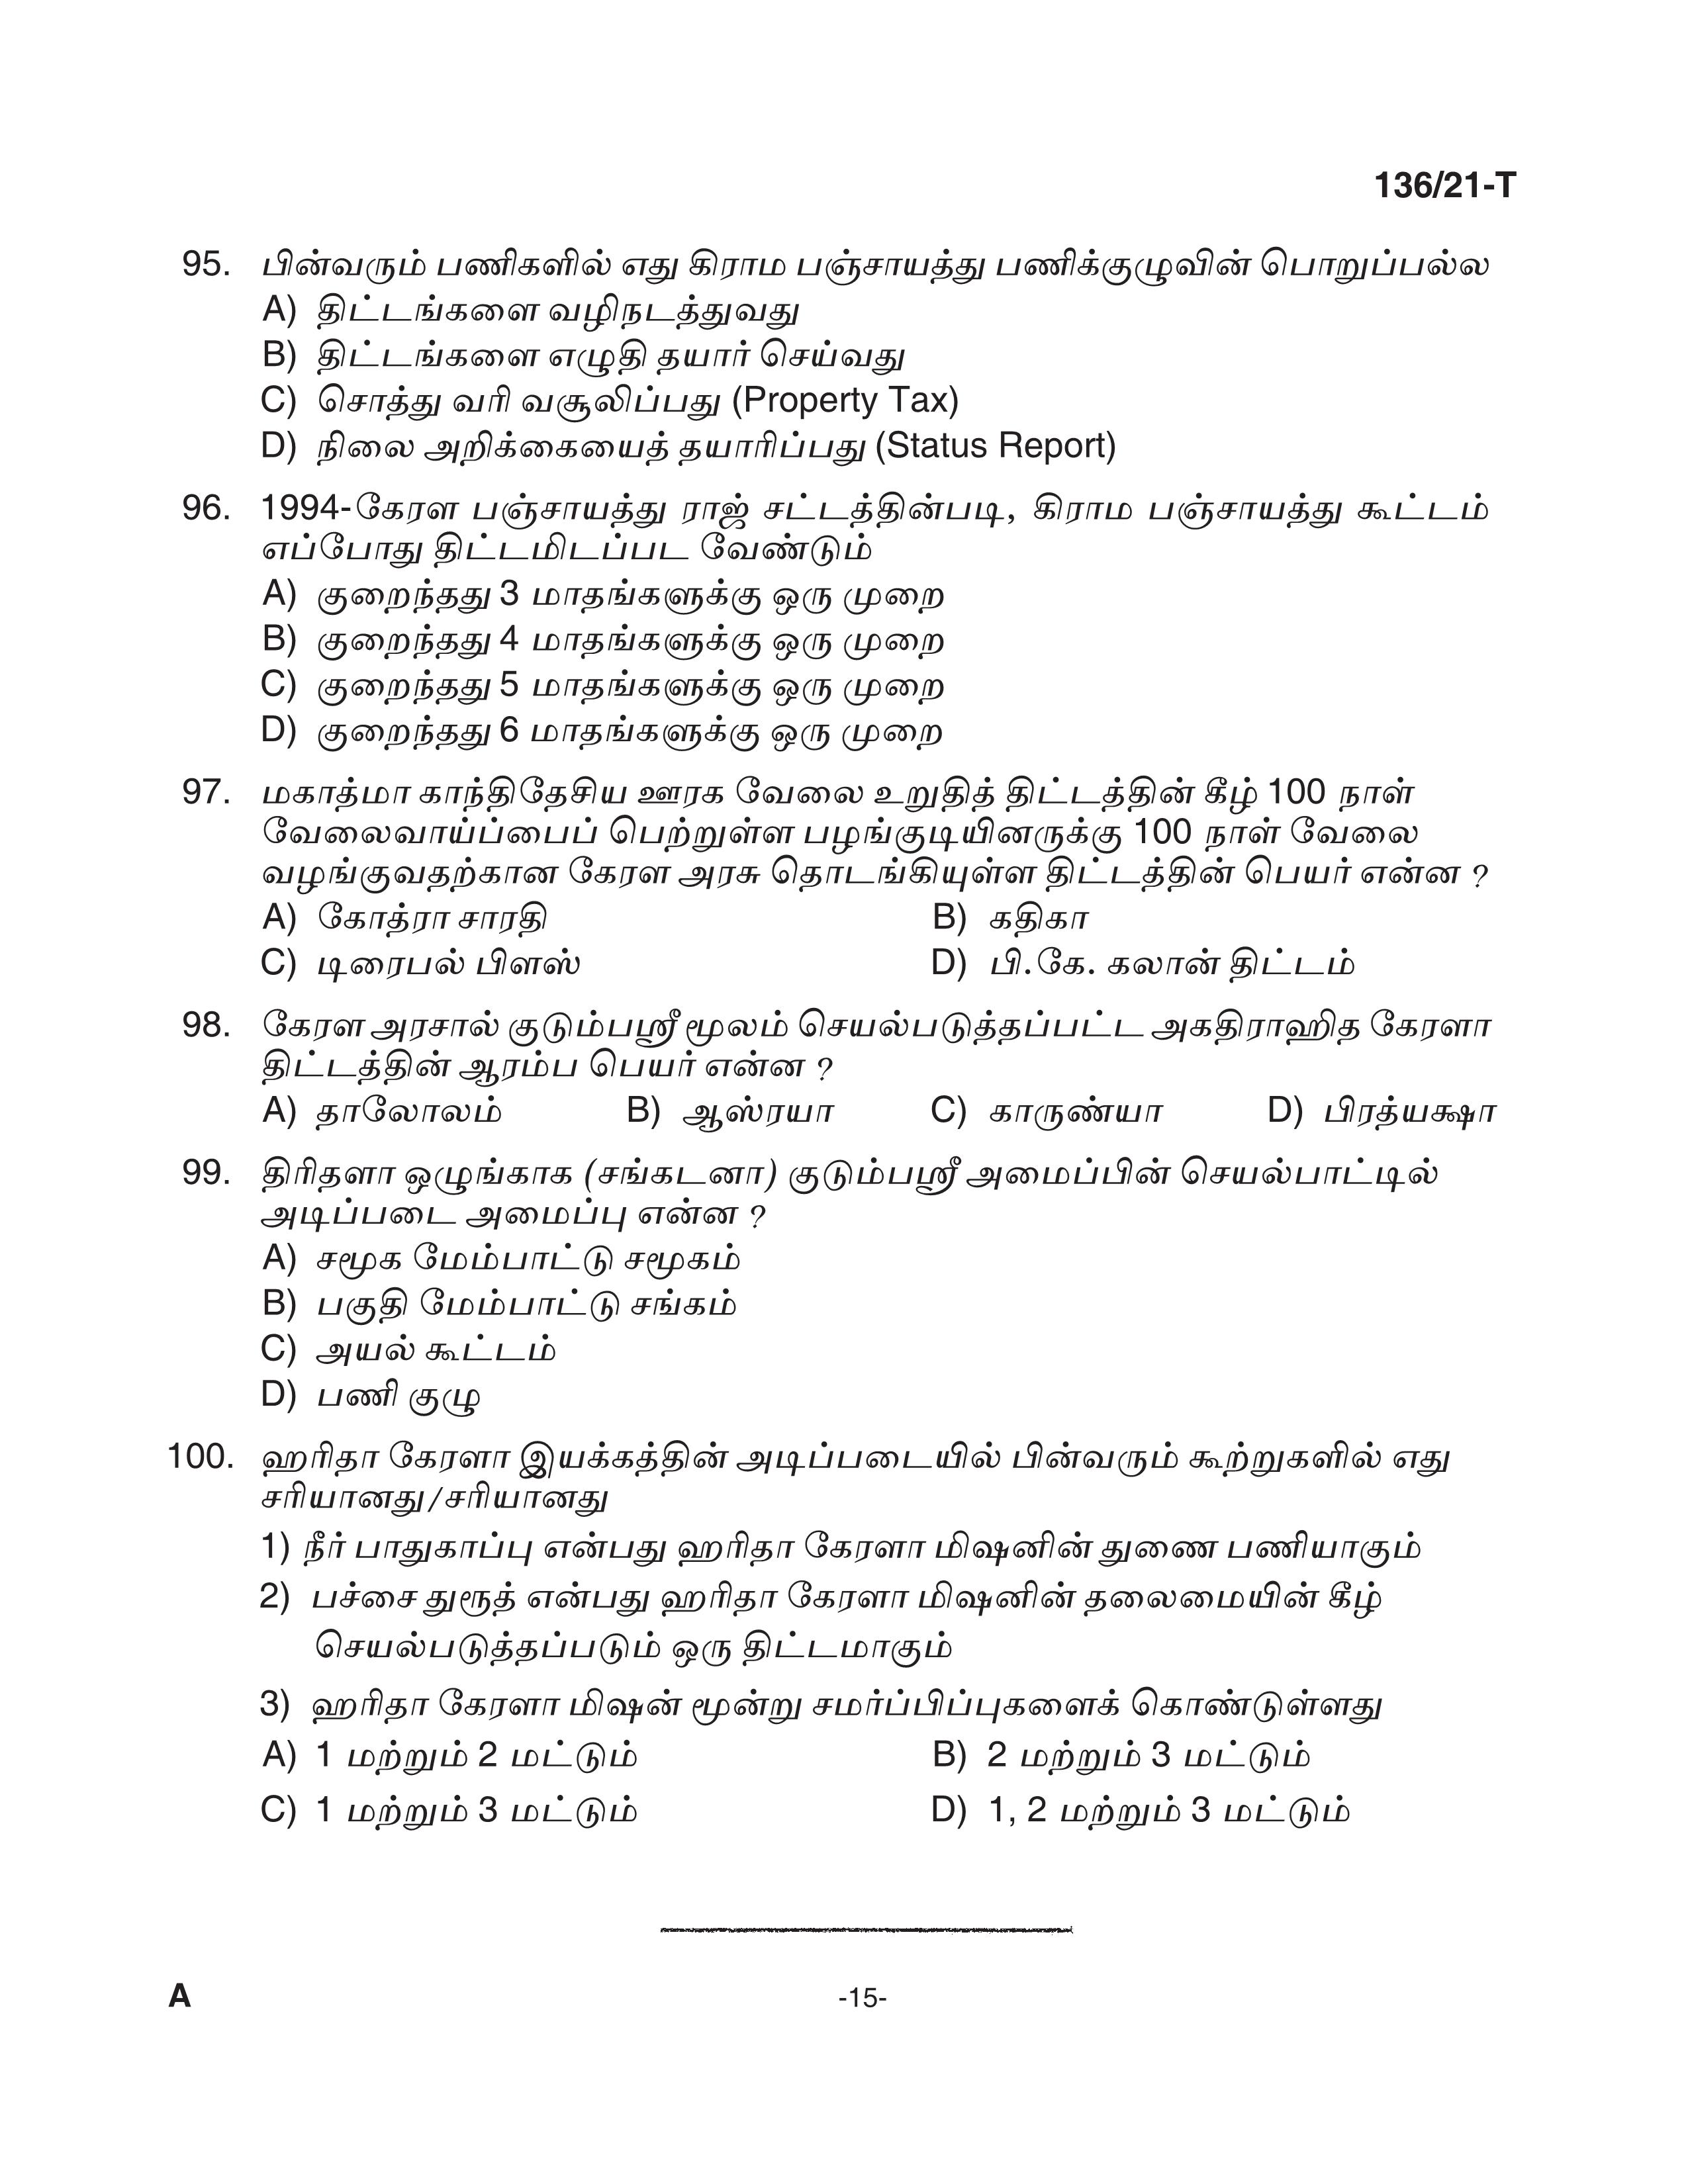 KPSC Village Extension Officer Tamil Exam 2021 Code 1362021 T 14